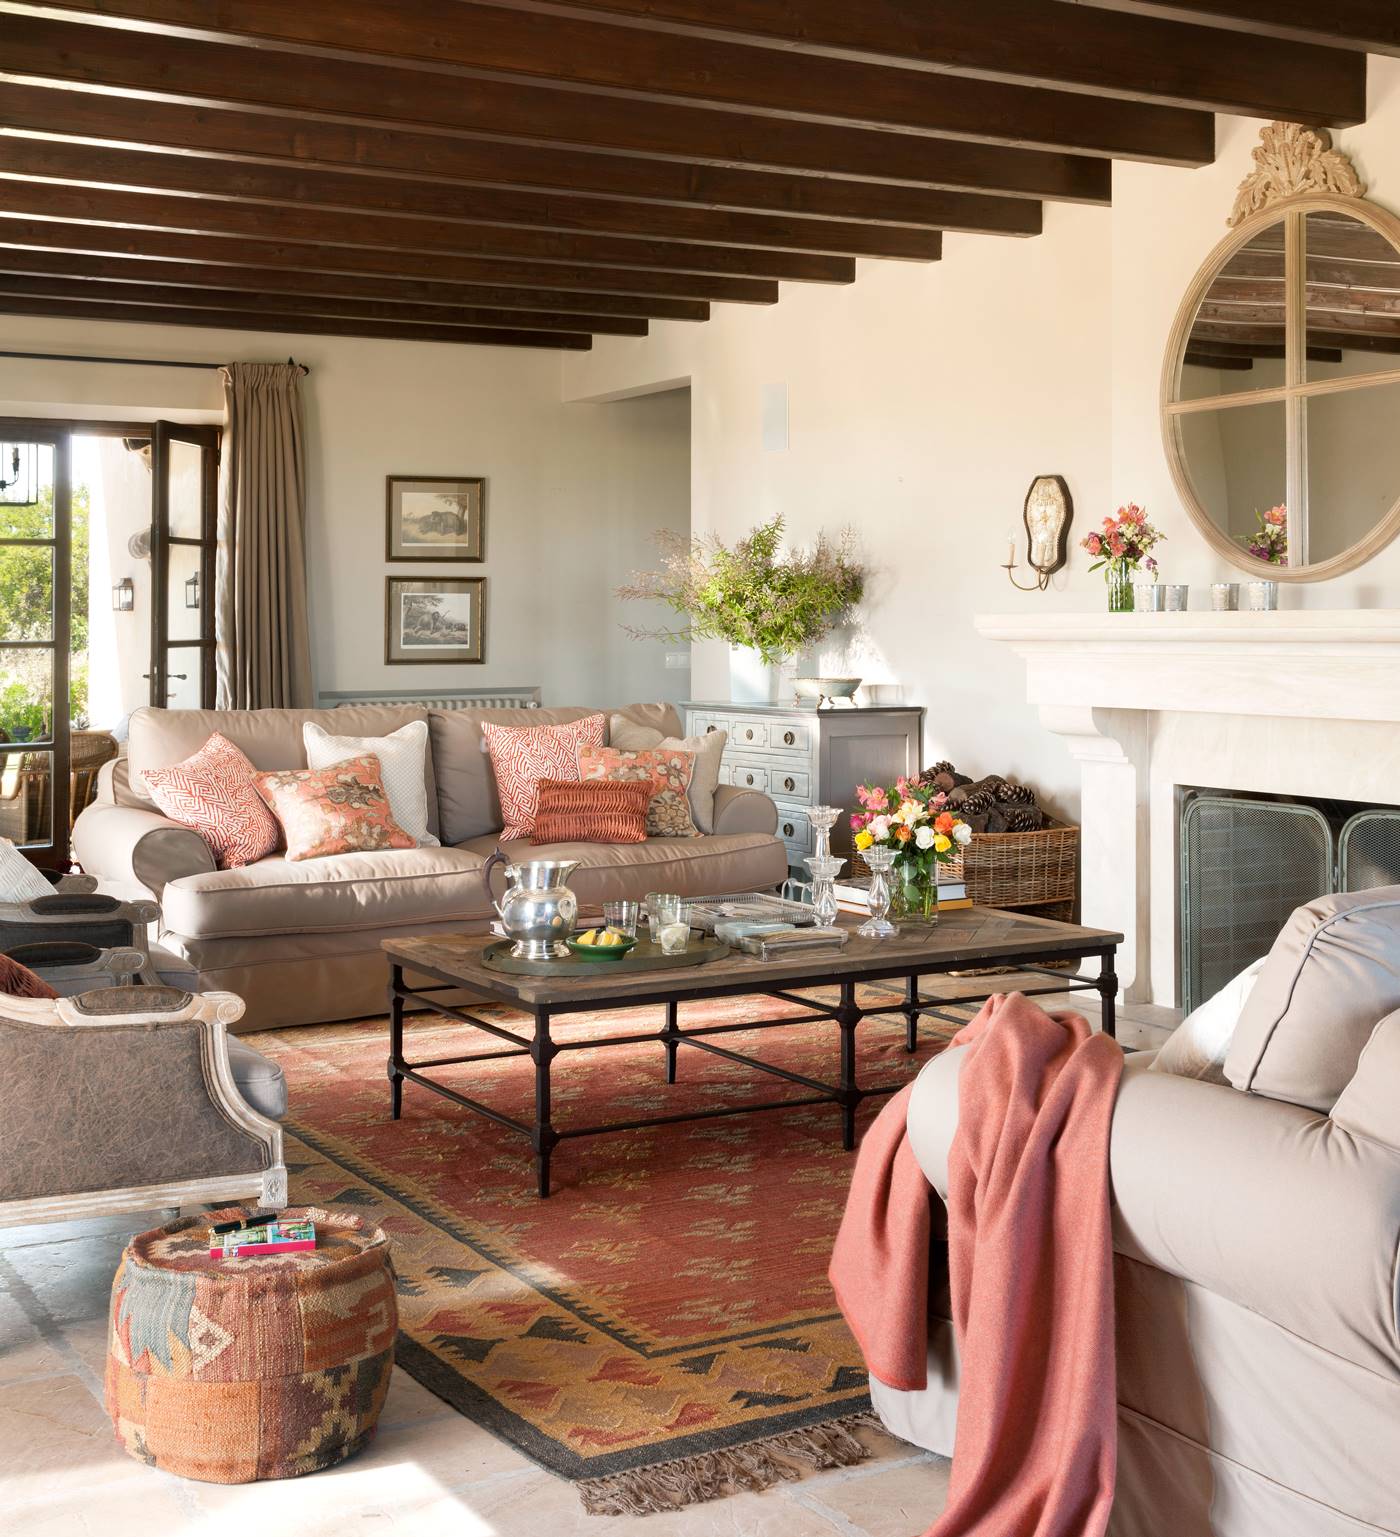 Salón con sofás enfrentados beige, alfombra, cojines, puf y plaid en tonos rosa, terracota, tierra y anaranjado, mesa de centro, chimenea y espejo redondo con moldura superior_368